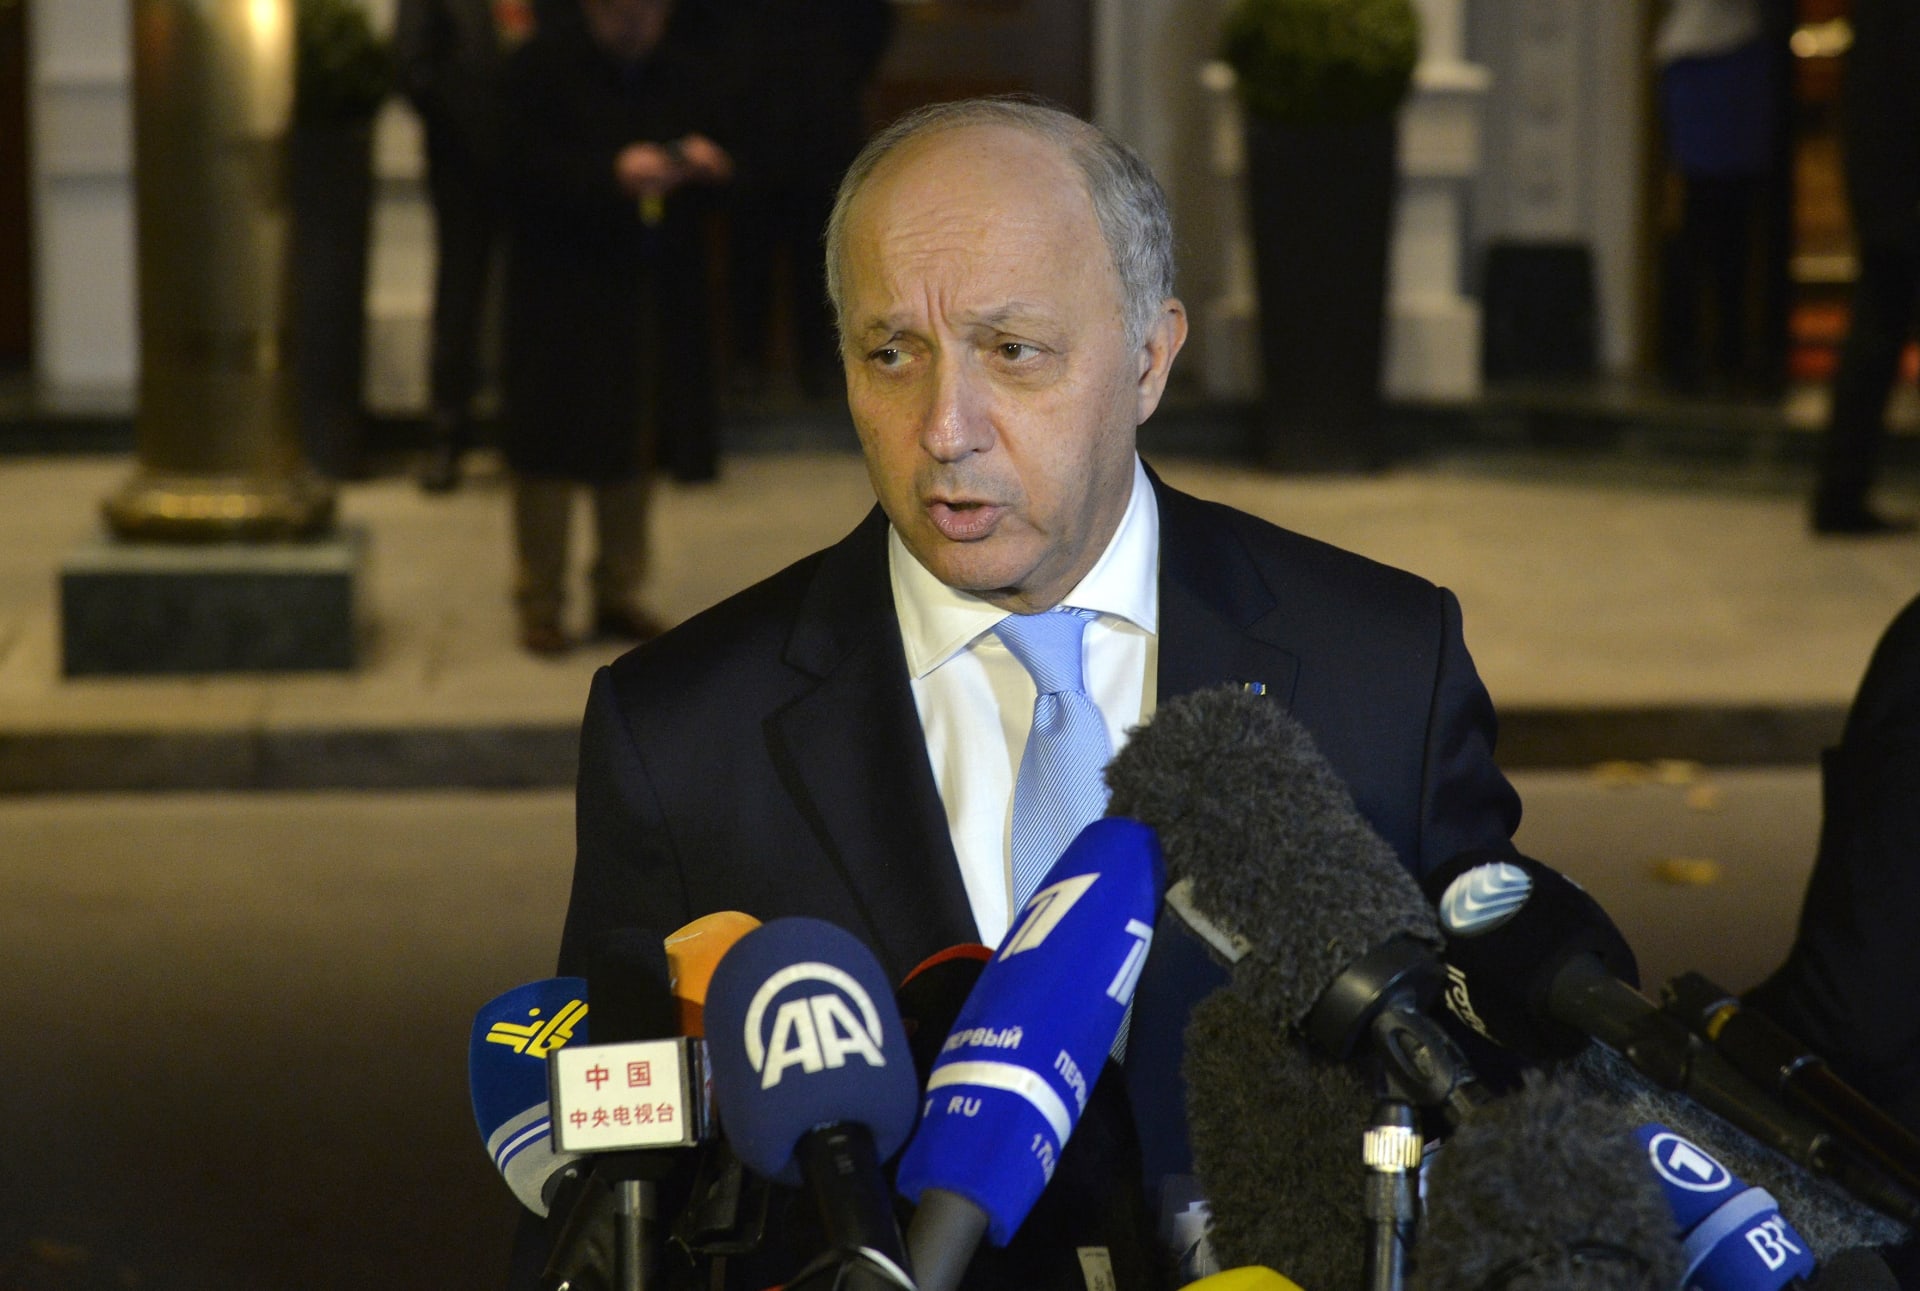 مطالبات باستقالة وزير الخارجية الفرنسي وسط اتهامات بالفساد لنجله منها إصدار شيكات دون رصيد في لاس فيغاس